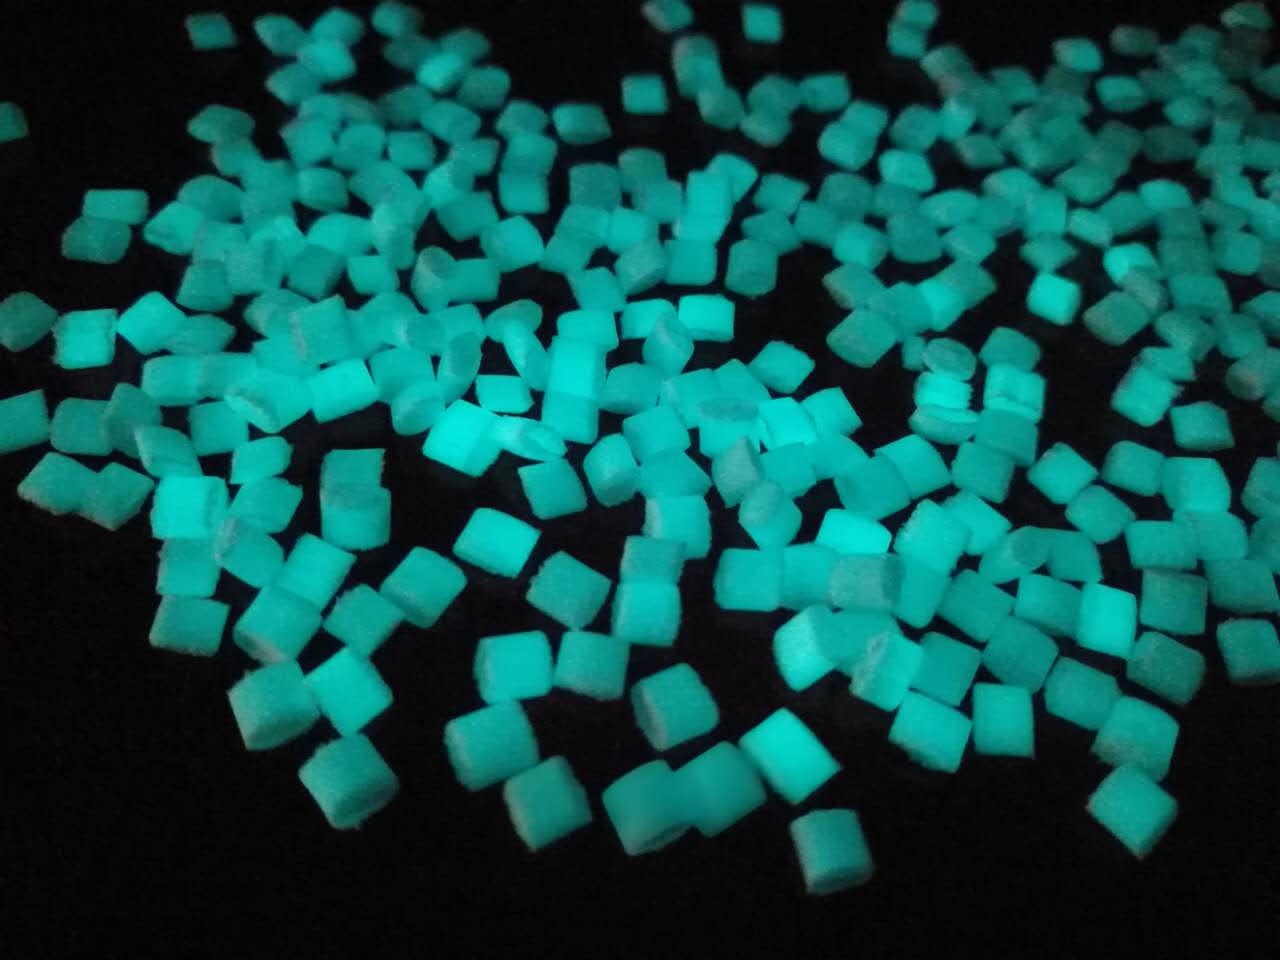 Luminous powder pellet